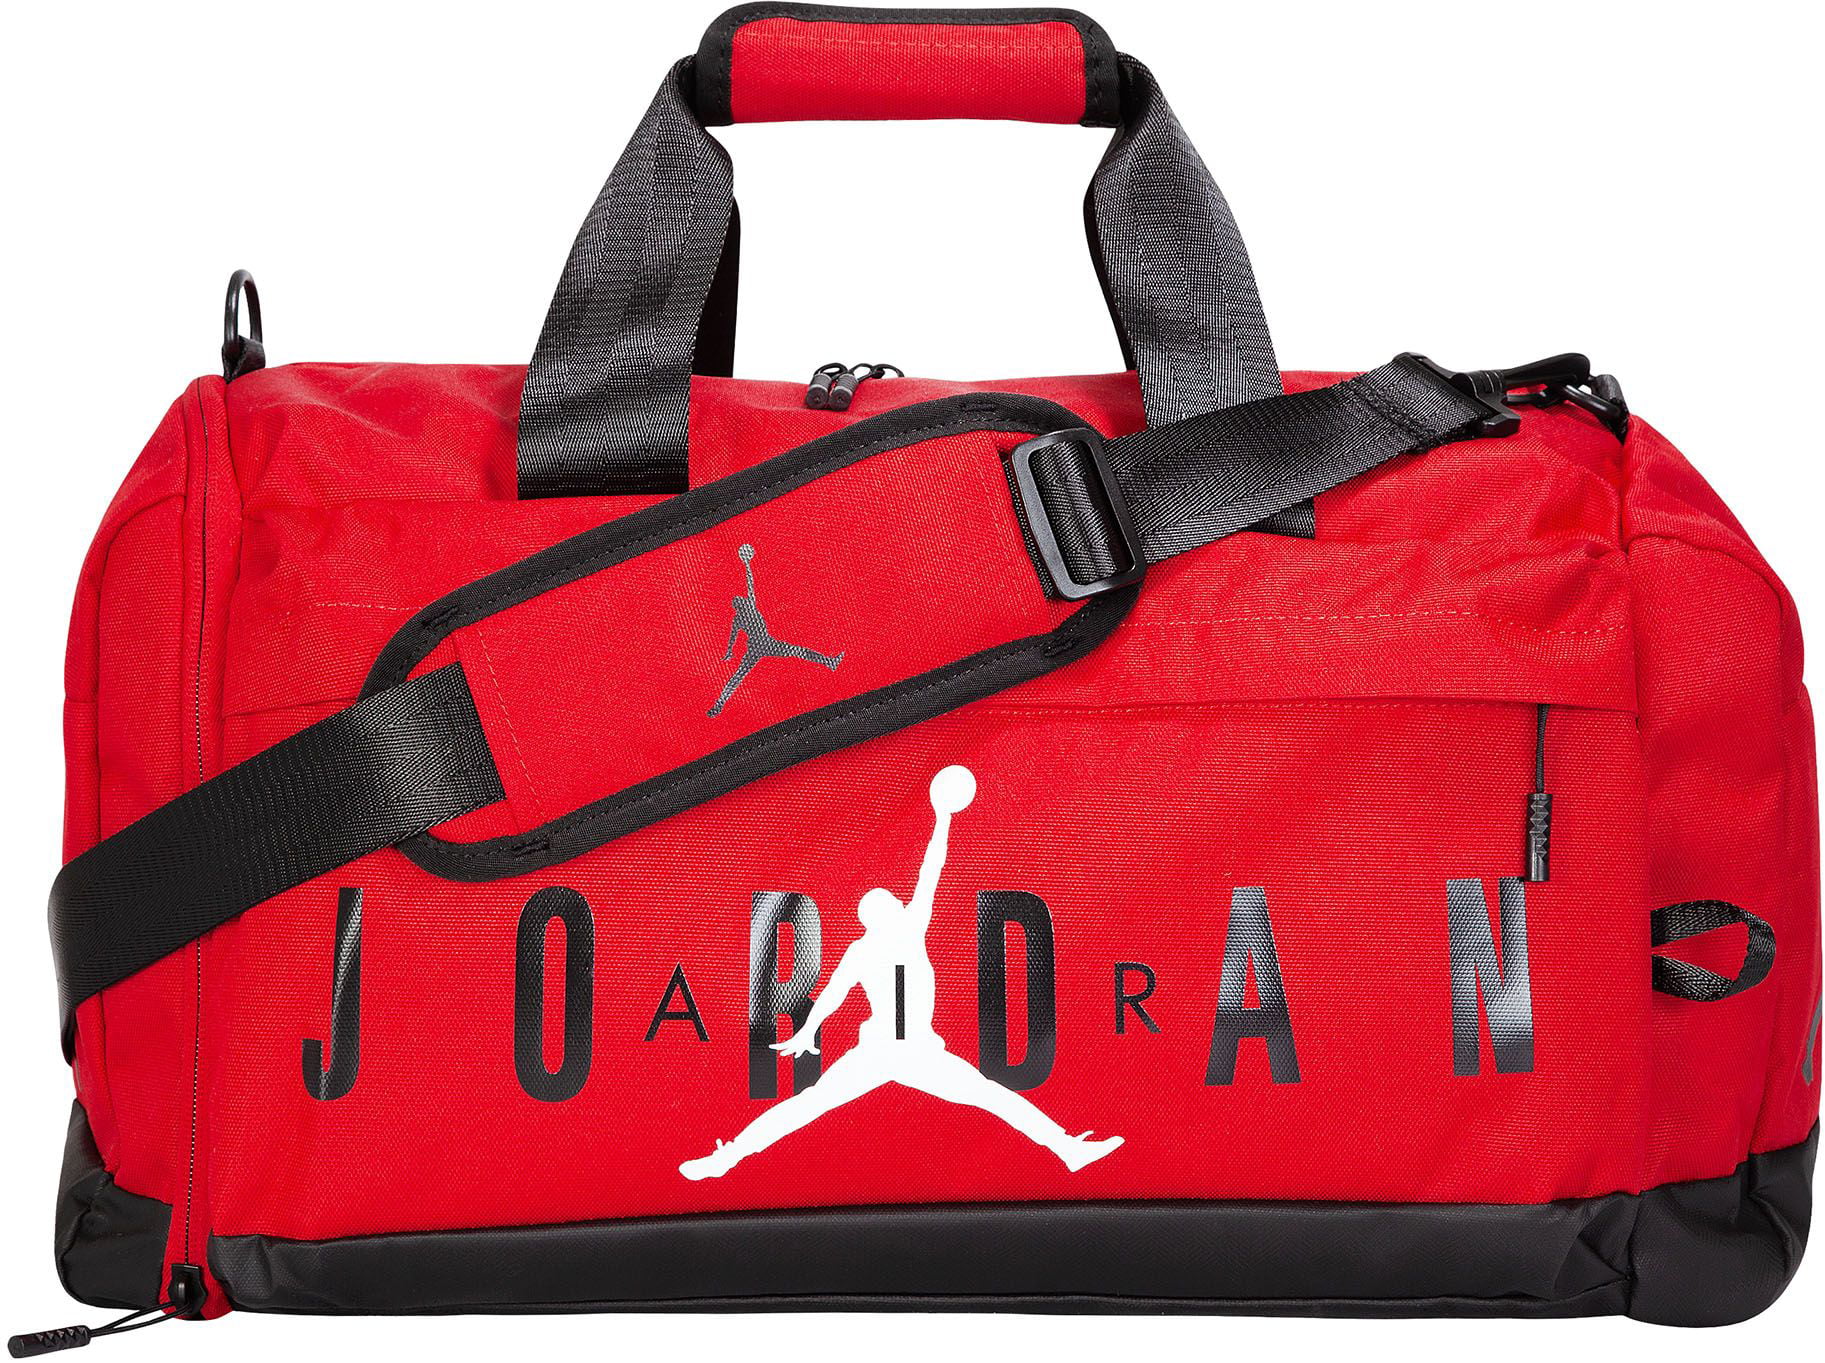 Jordan Velocity Duffle Bag - Walmart.com